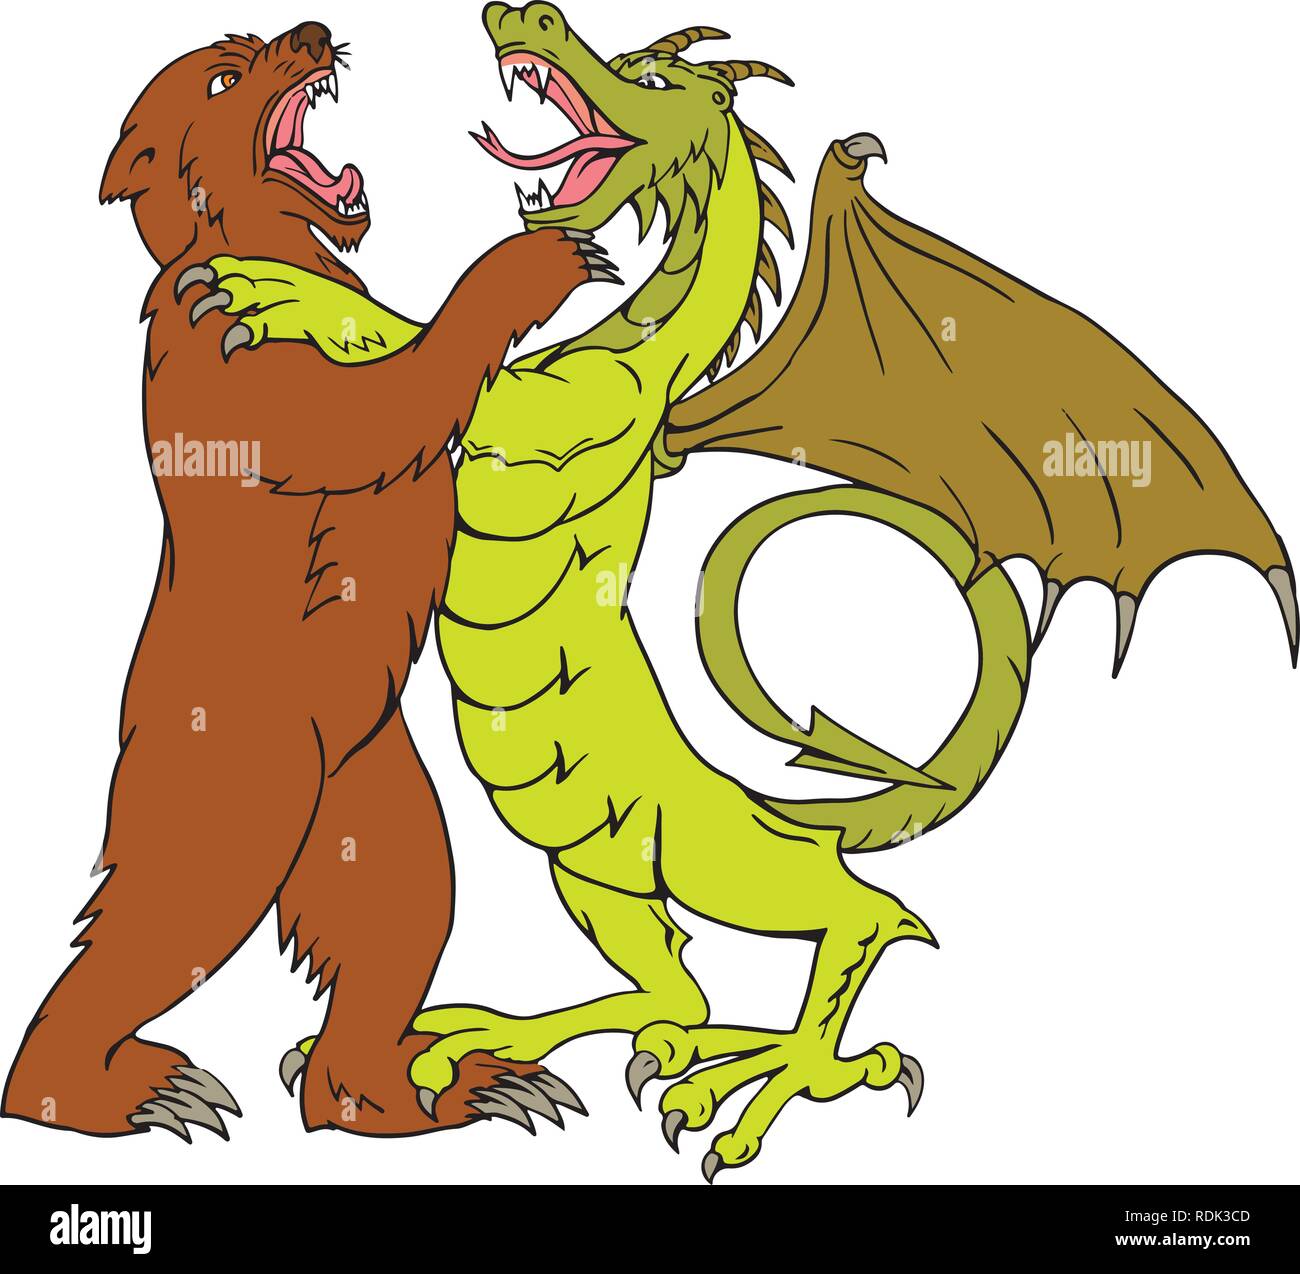 Disegno stile sketch illustrazione di un dragone cinese wrestling, giostre, sparring o combattendo contro un orso grizzly isolato su sfondo bianco fatto in fu Illustrazione Vettoriale